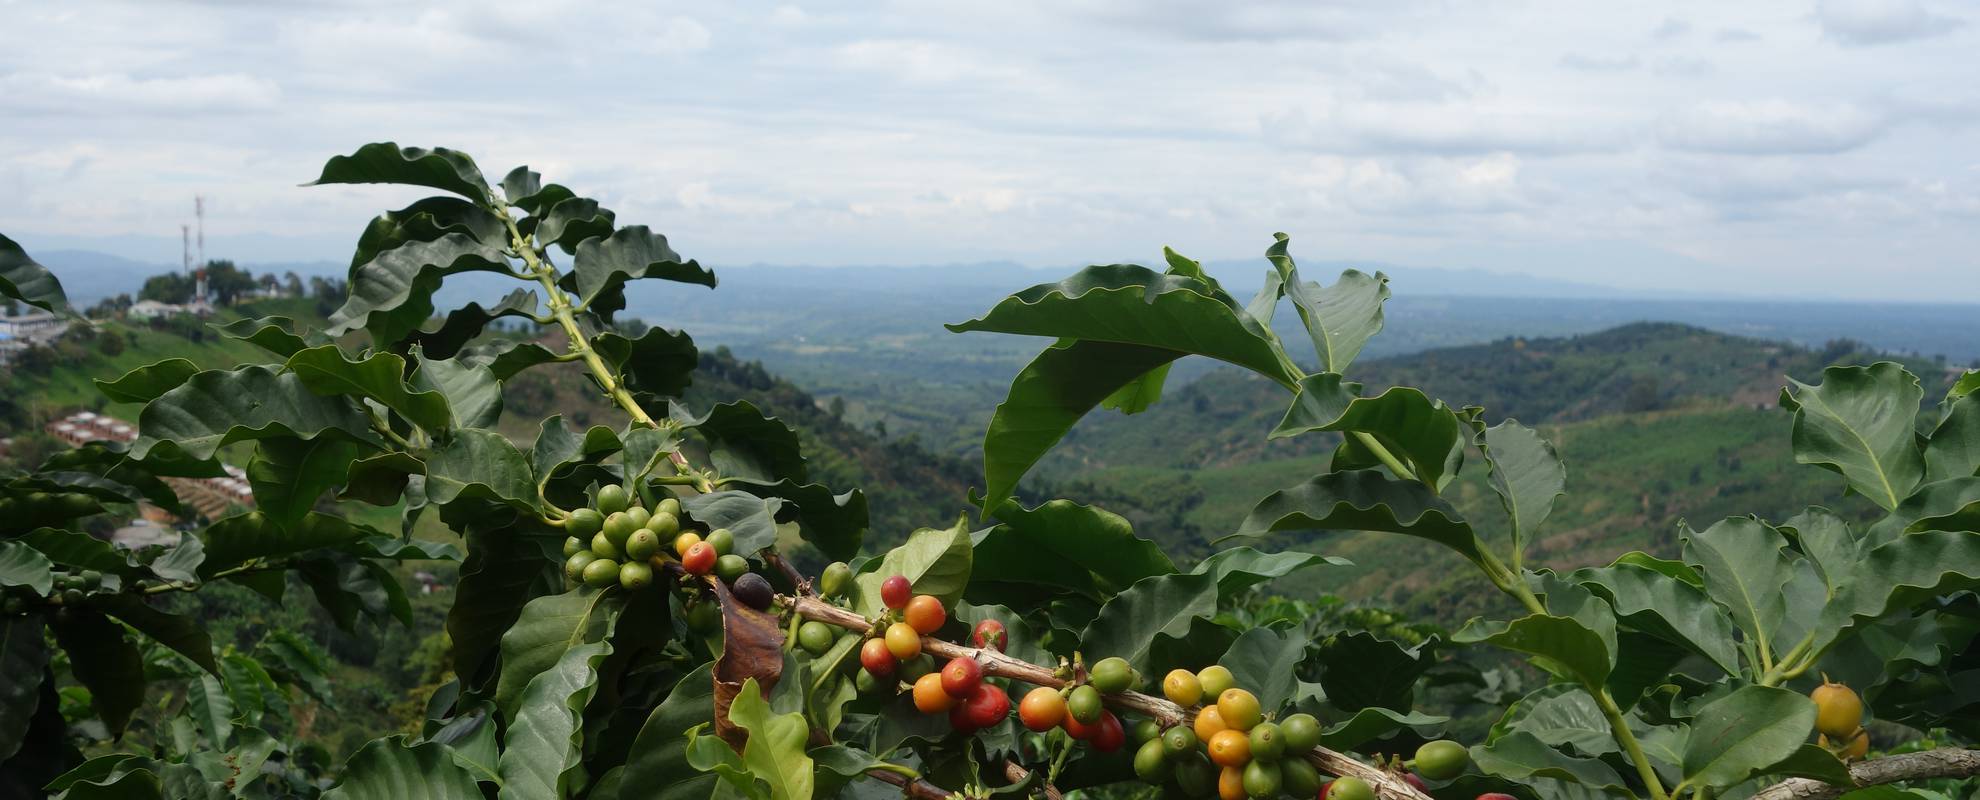 Colombia är världens tredje största kaffeexportör